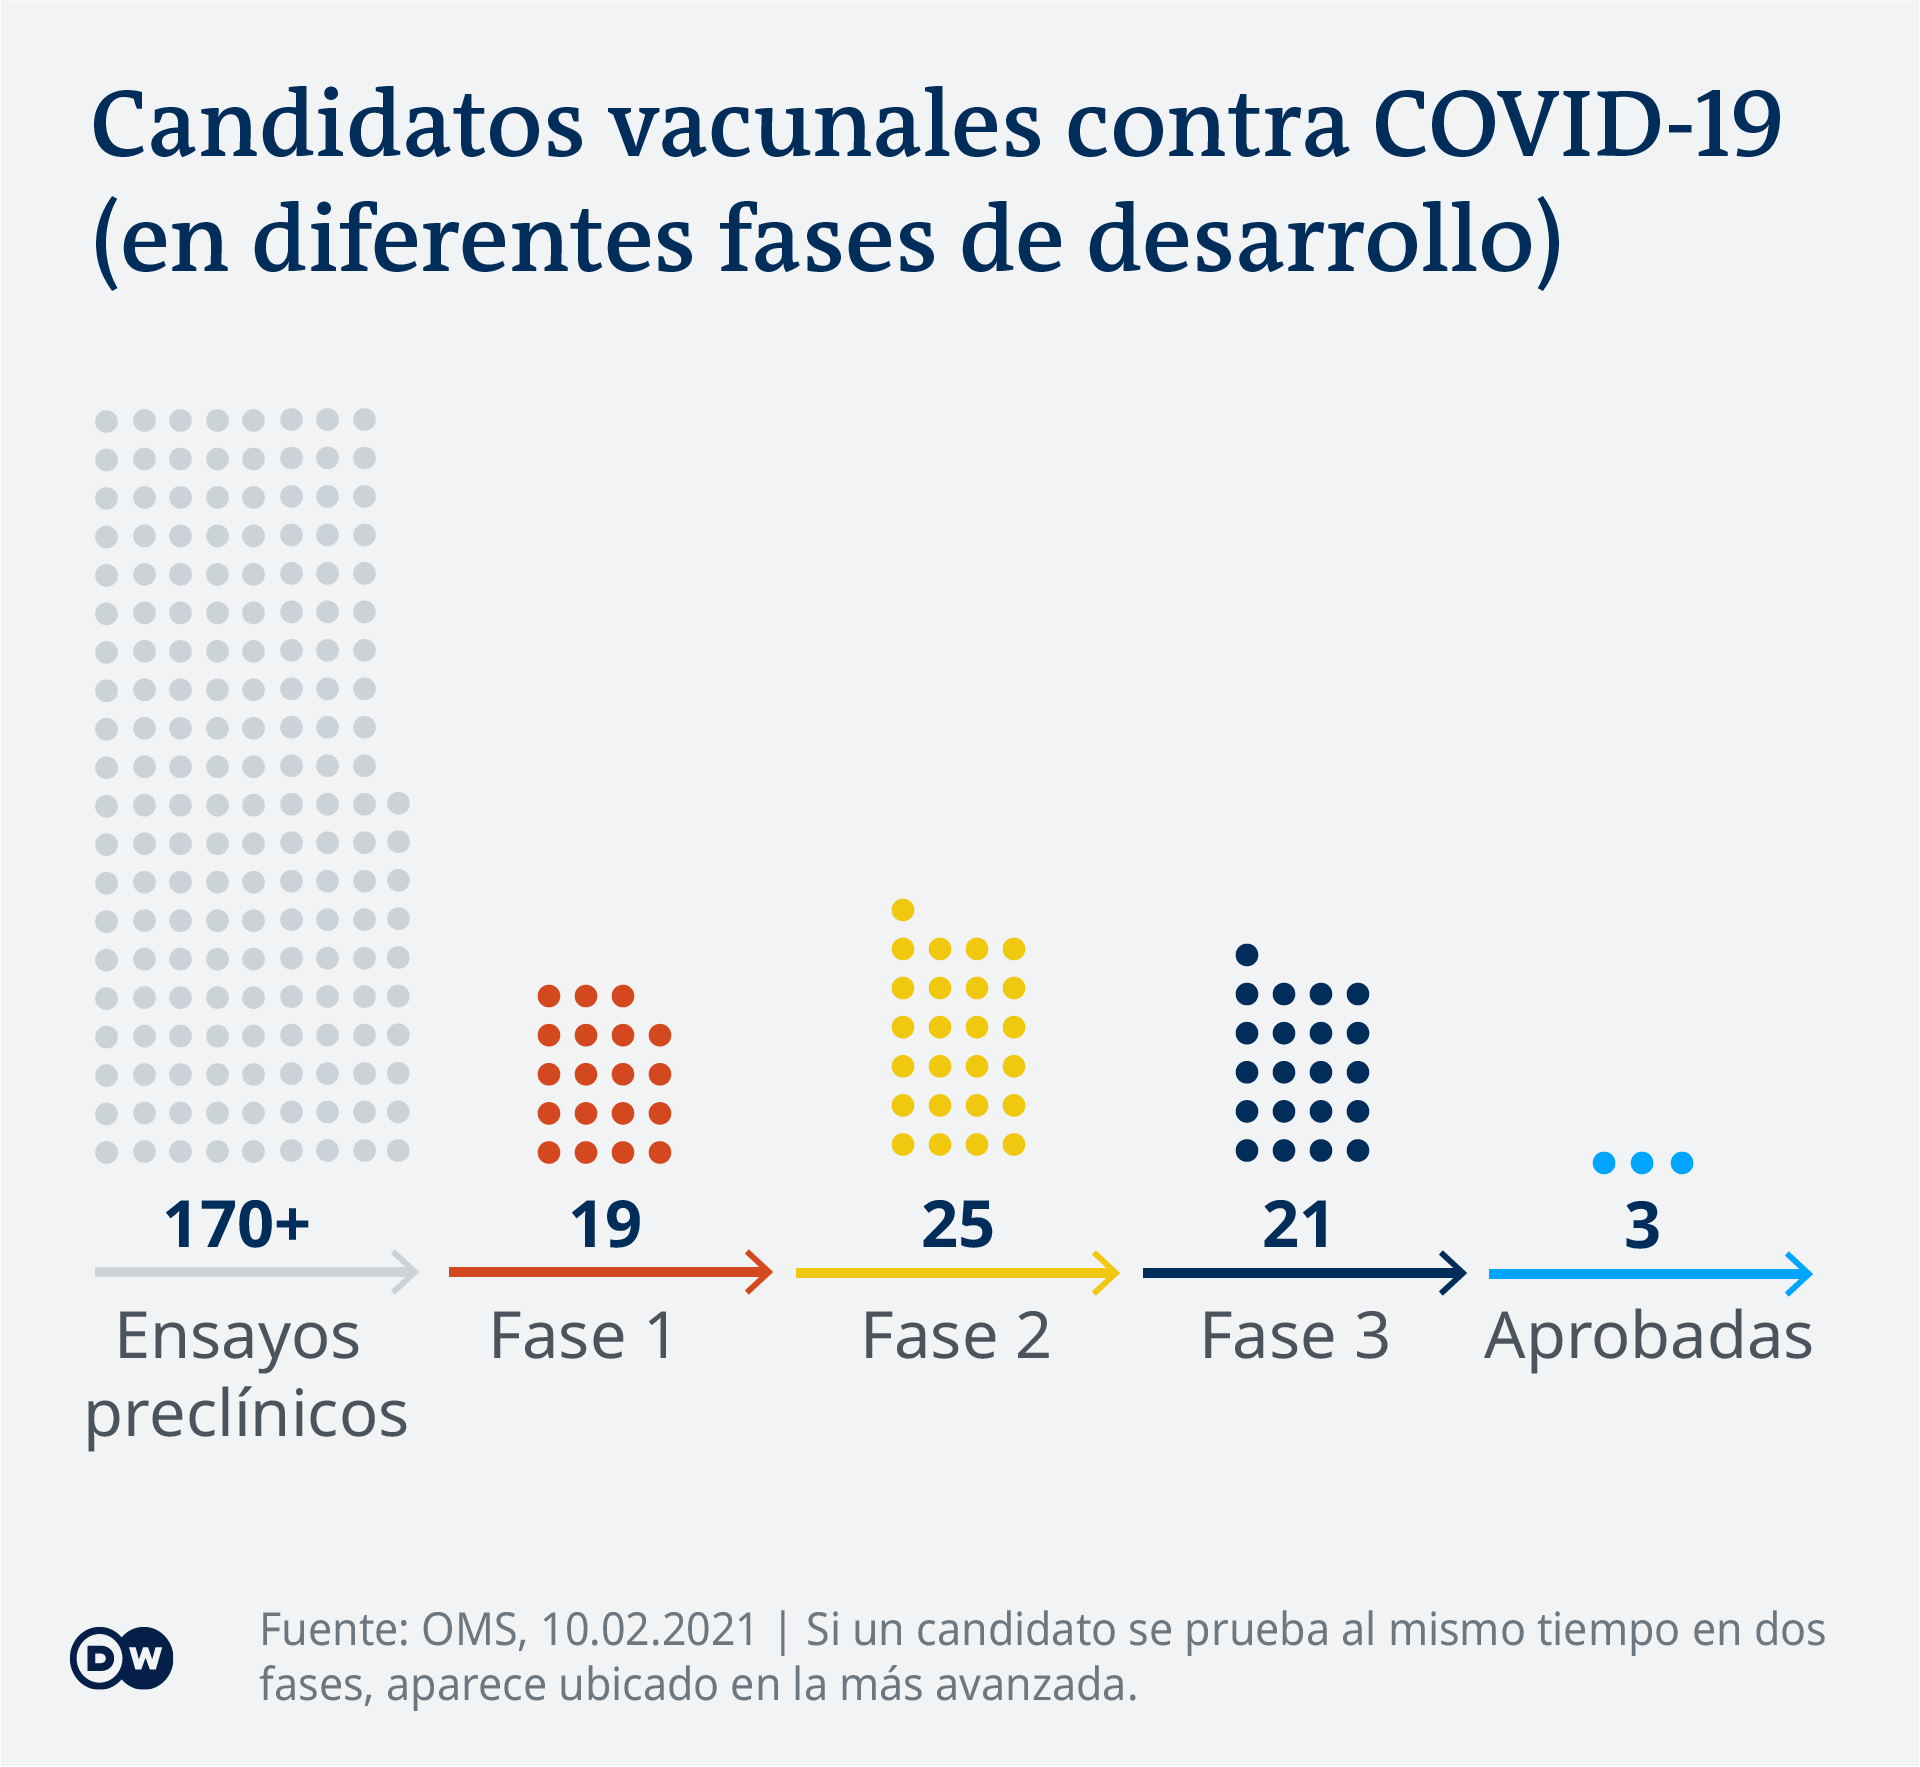 Data visualization - COVID-19 vaccine tracker - Status - Update Feb 10, 2021 - Spanish